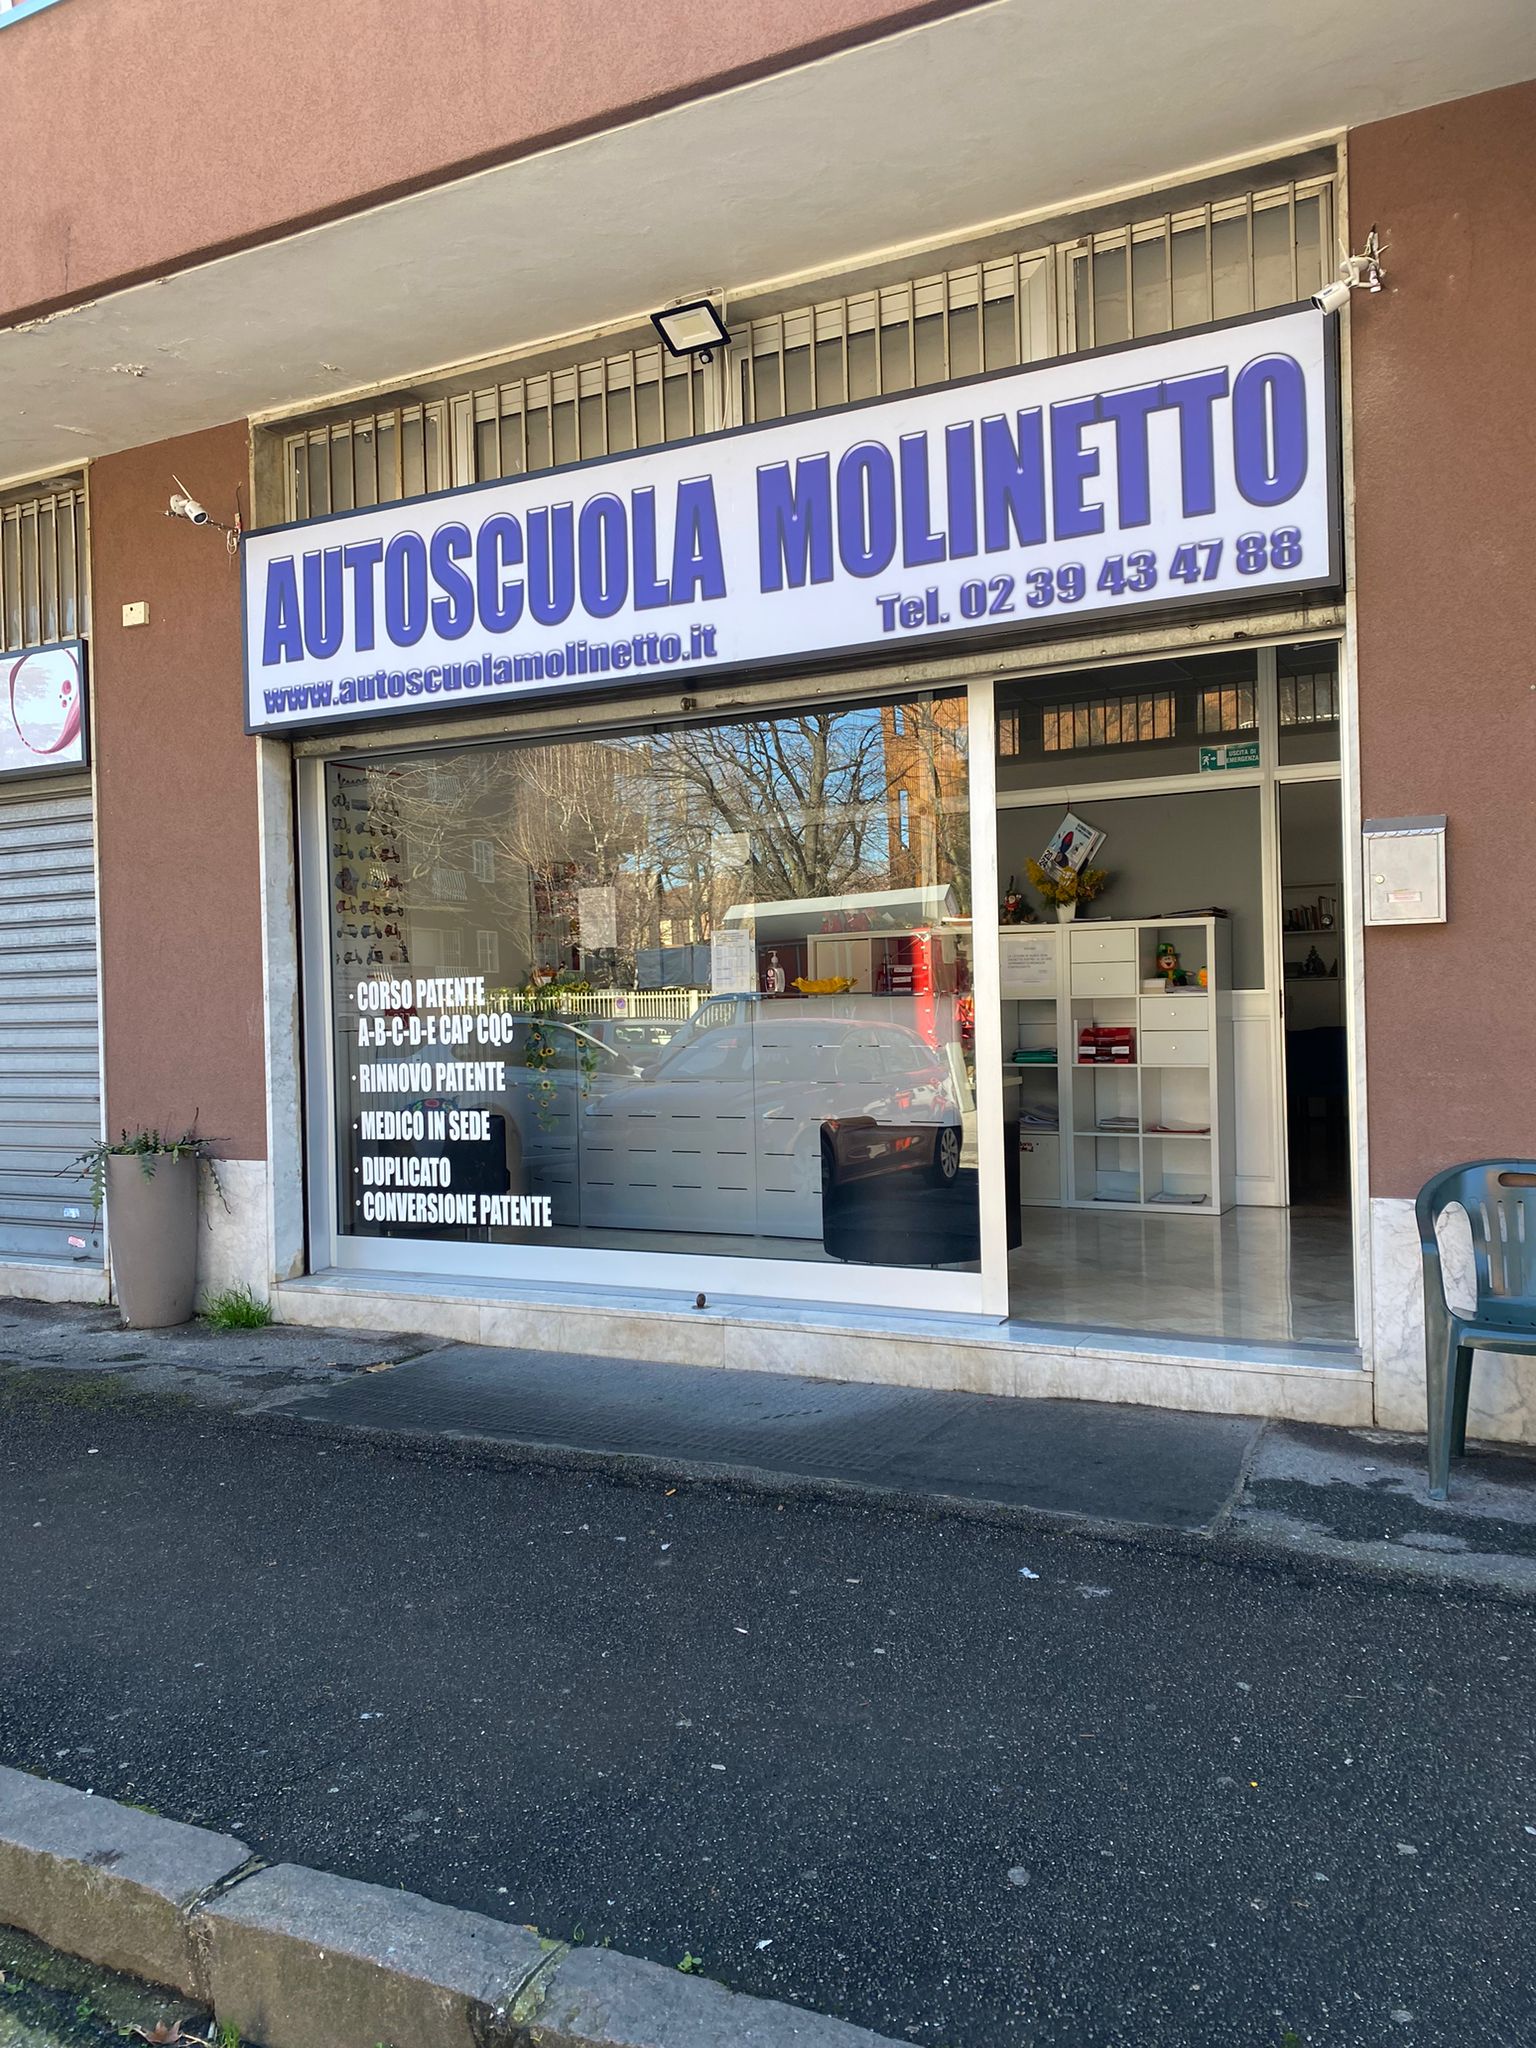  La nostra sede a Cesano Boscone | Autoscuola Molinetto cesano